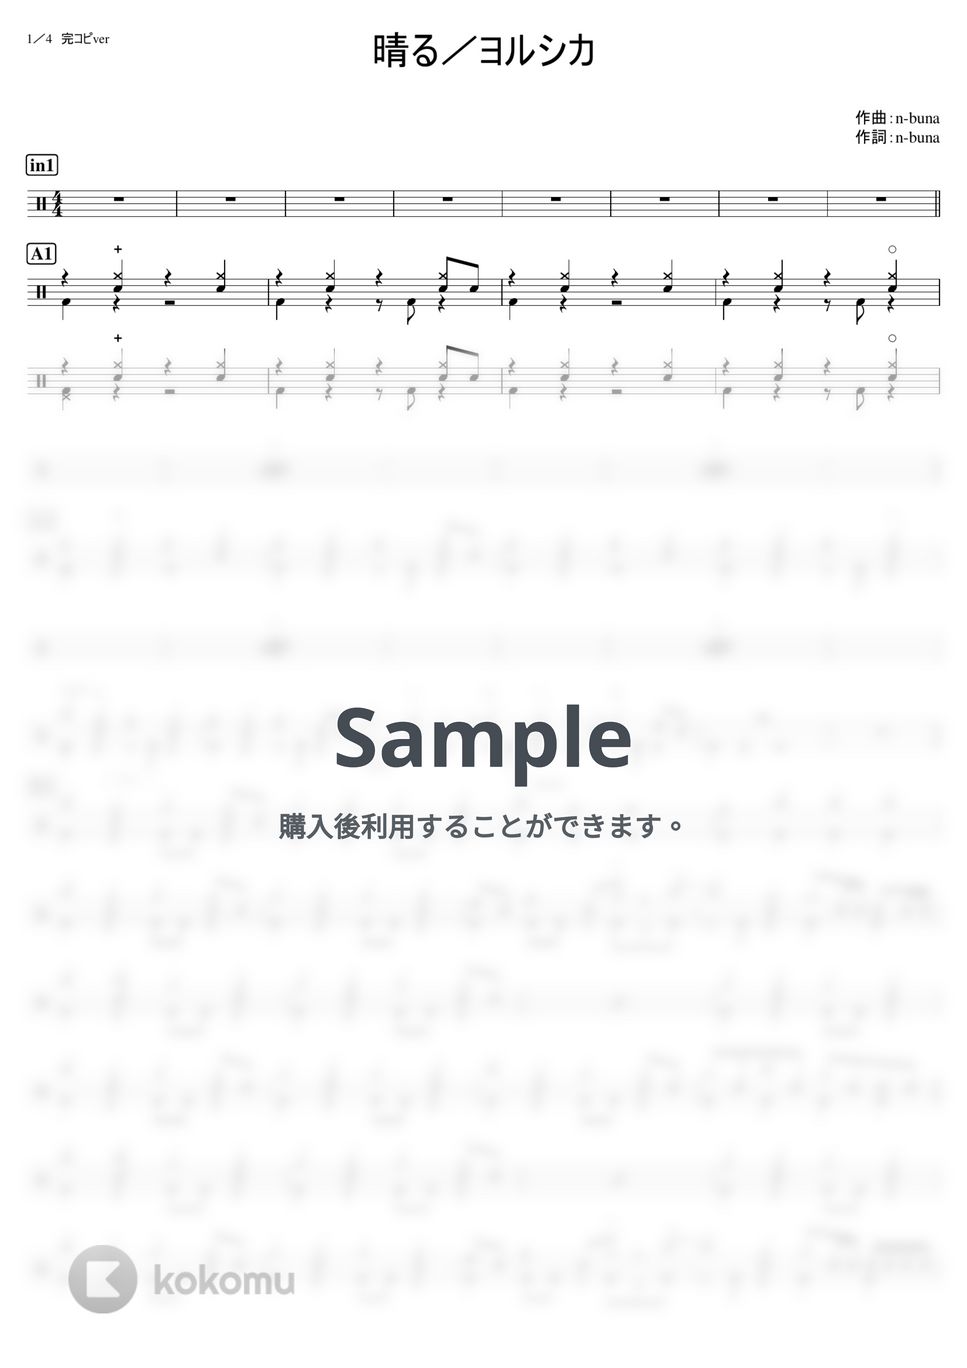 ヨルシカ - 晴る (上級) by kamishinjo-drum-school